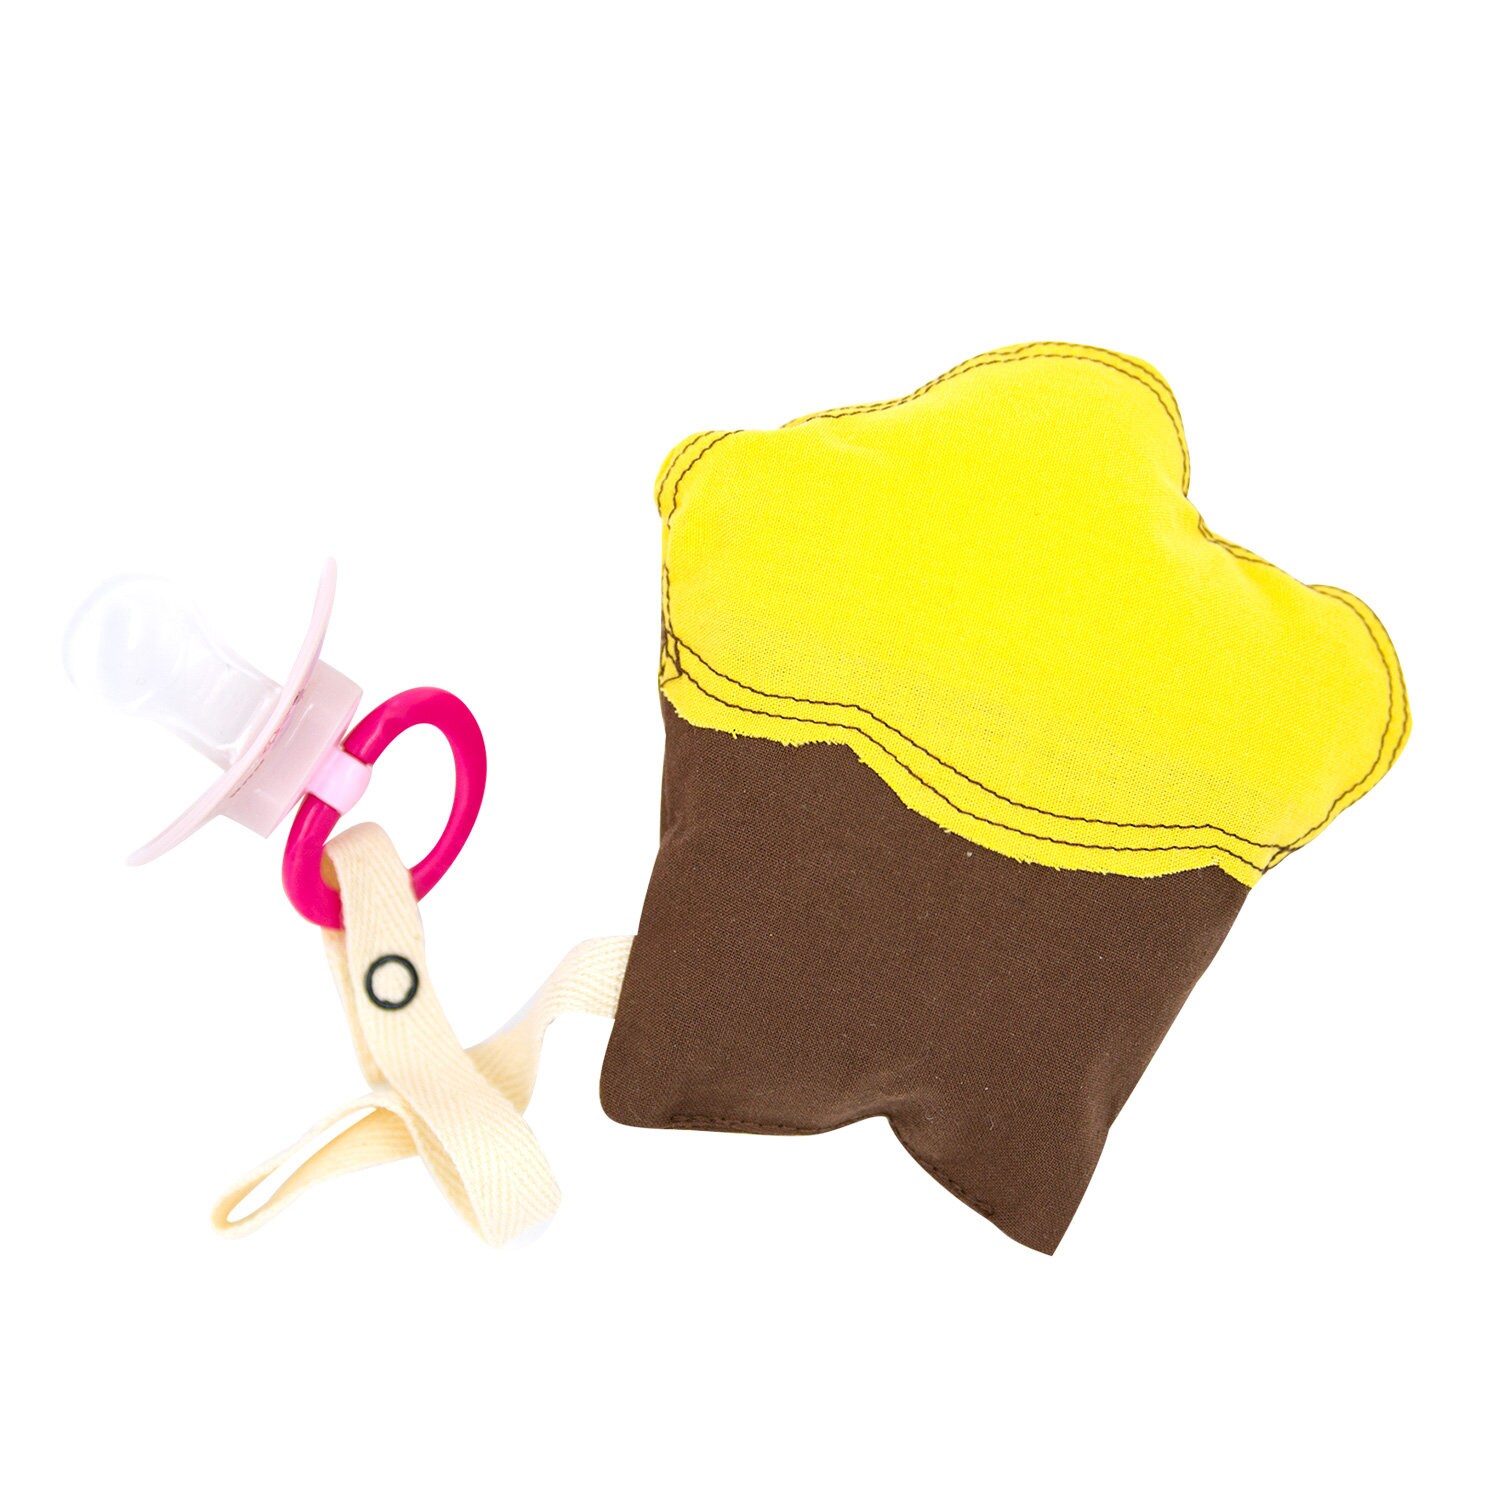 Schnullerkette "Cupcake" Aus Bio-Baumwolle Braun/Gelb Schnullerband Schnullertier von Etsy - DogsLoveCatsMUC